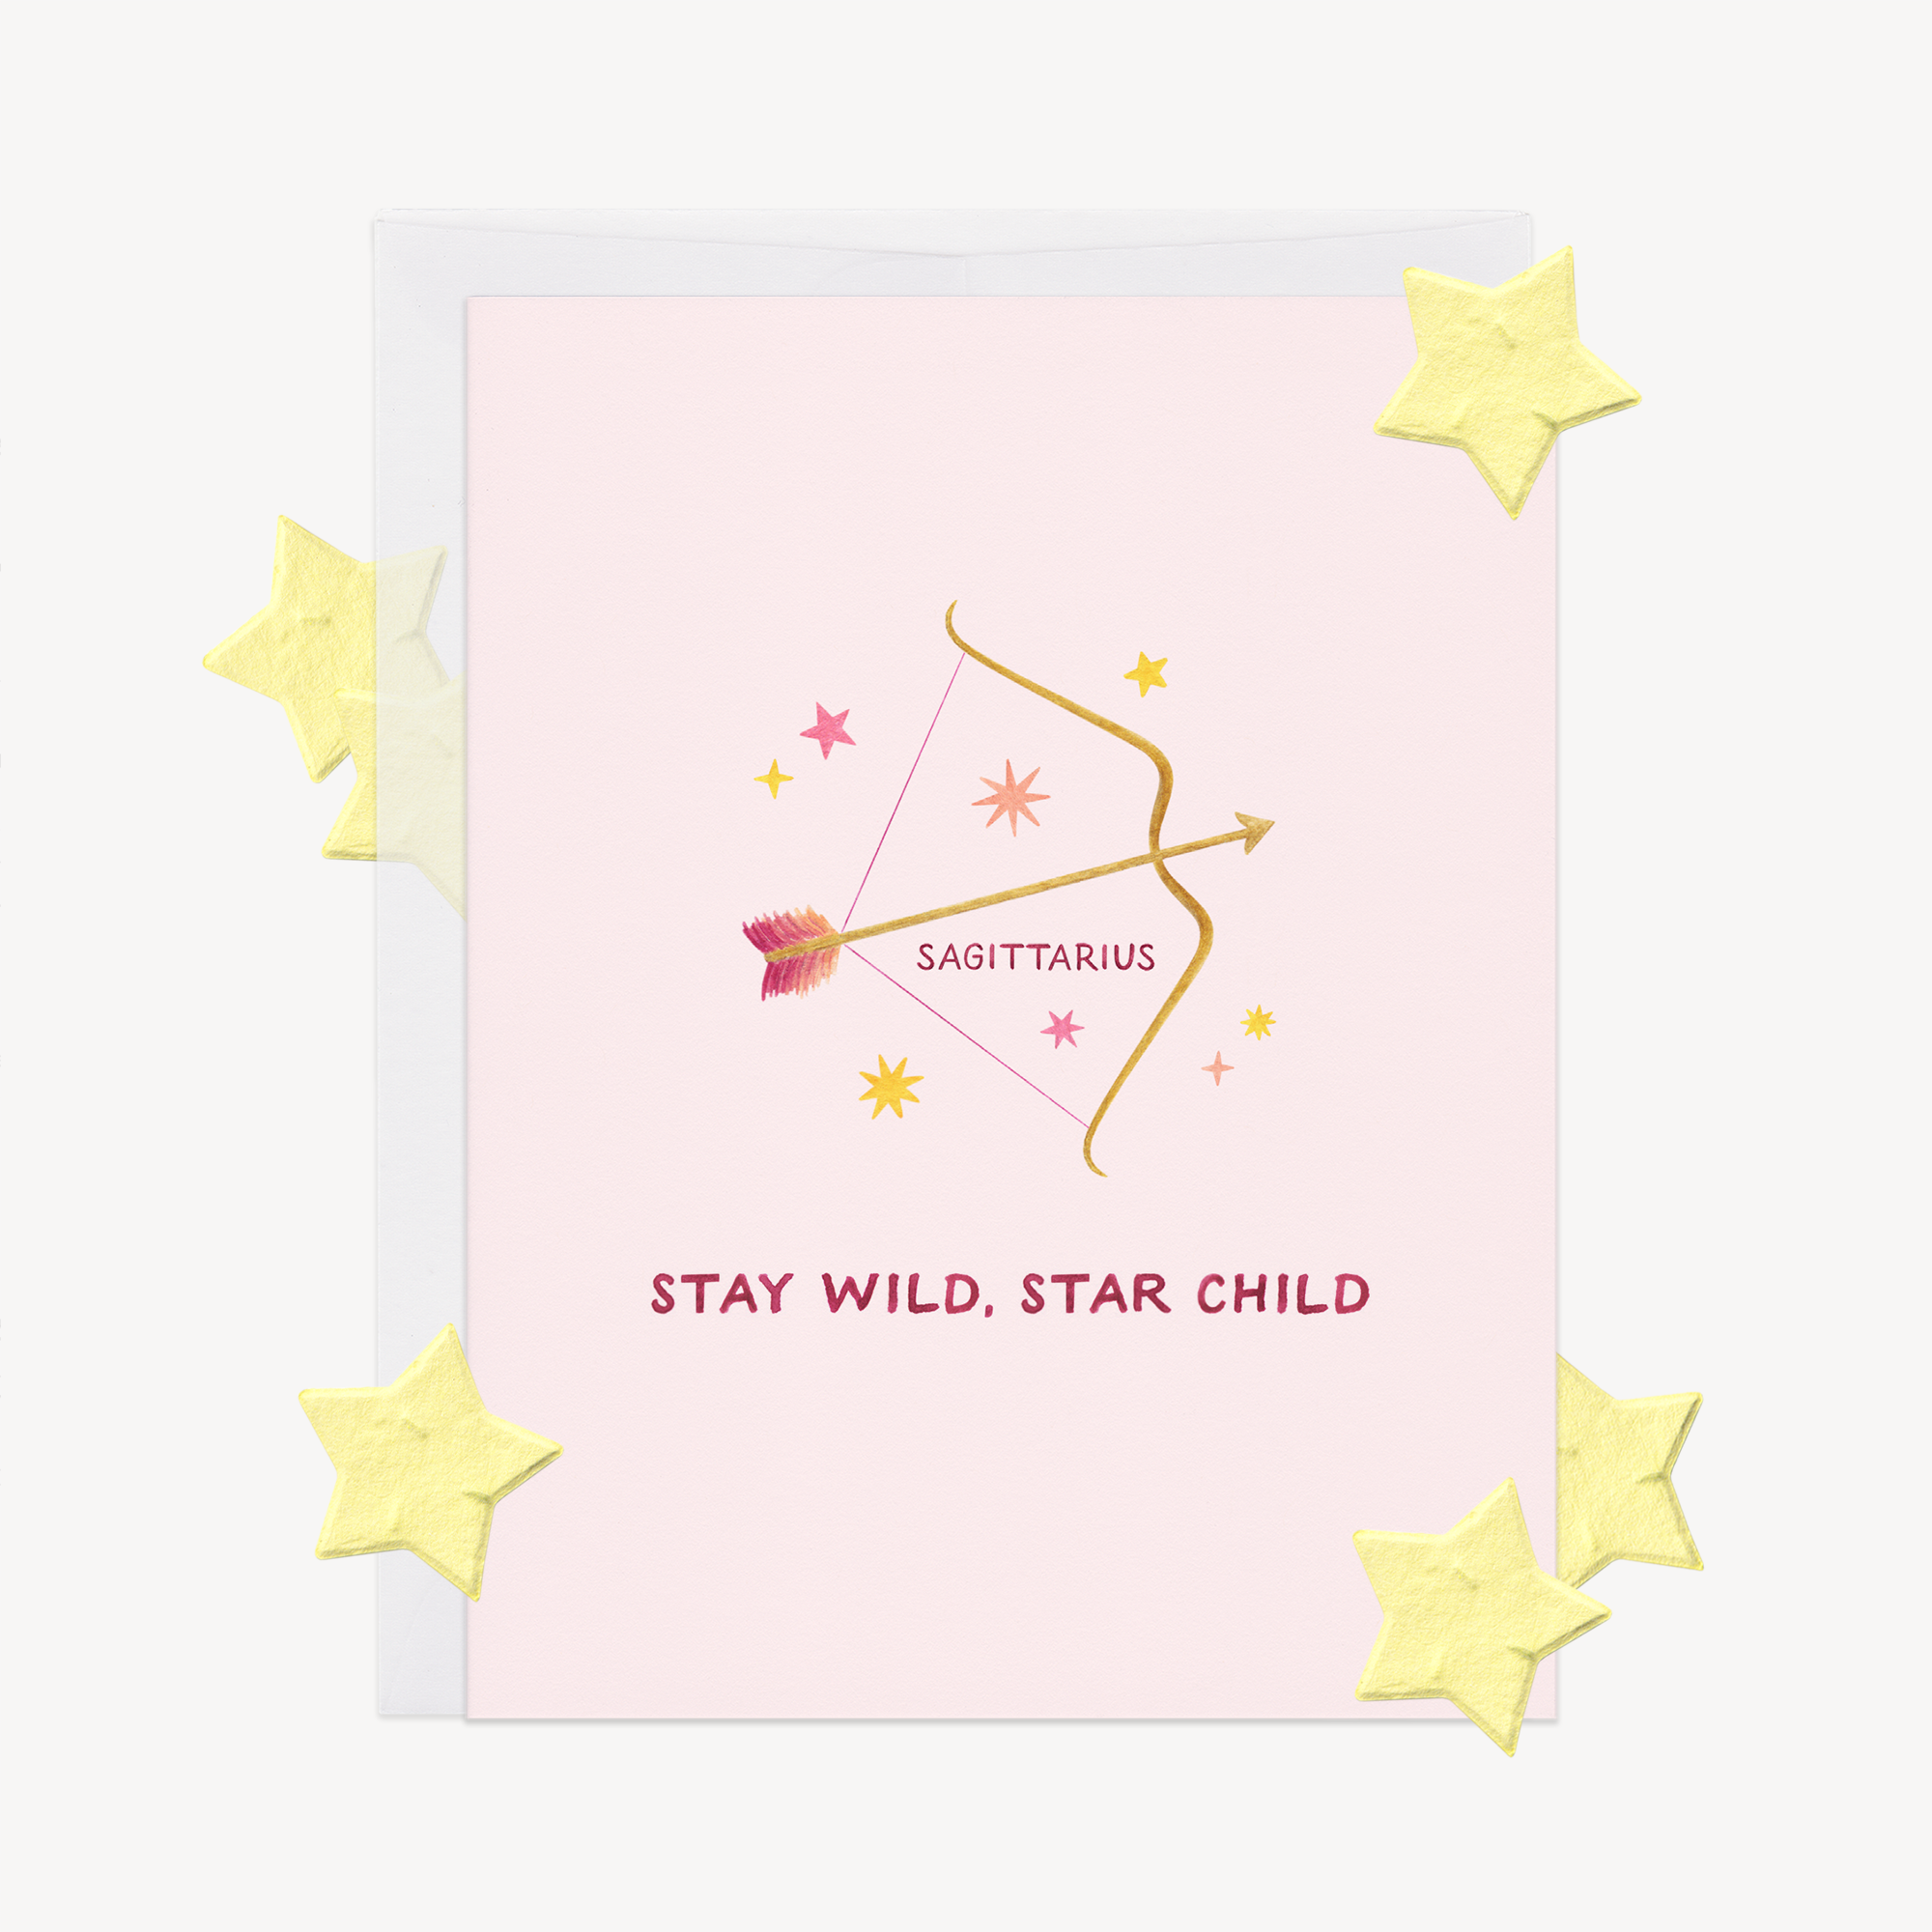 Stay Wild Sagittarius Astrology Card w/ Plantable Confetti